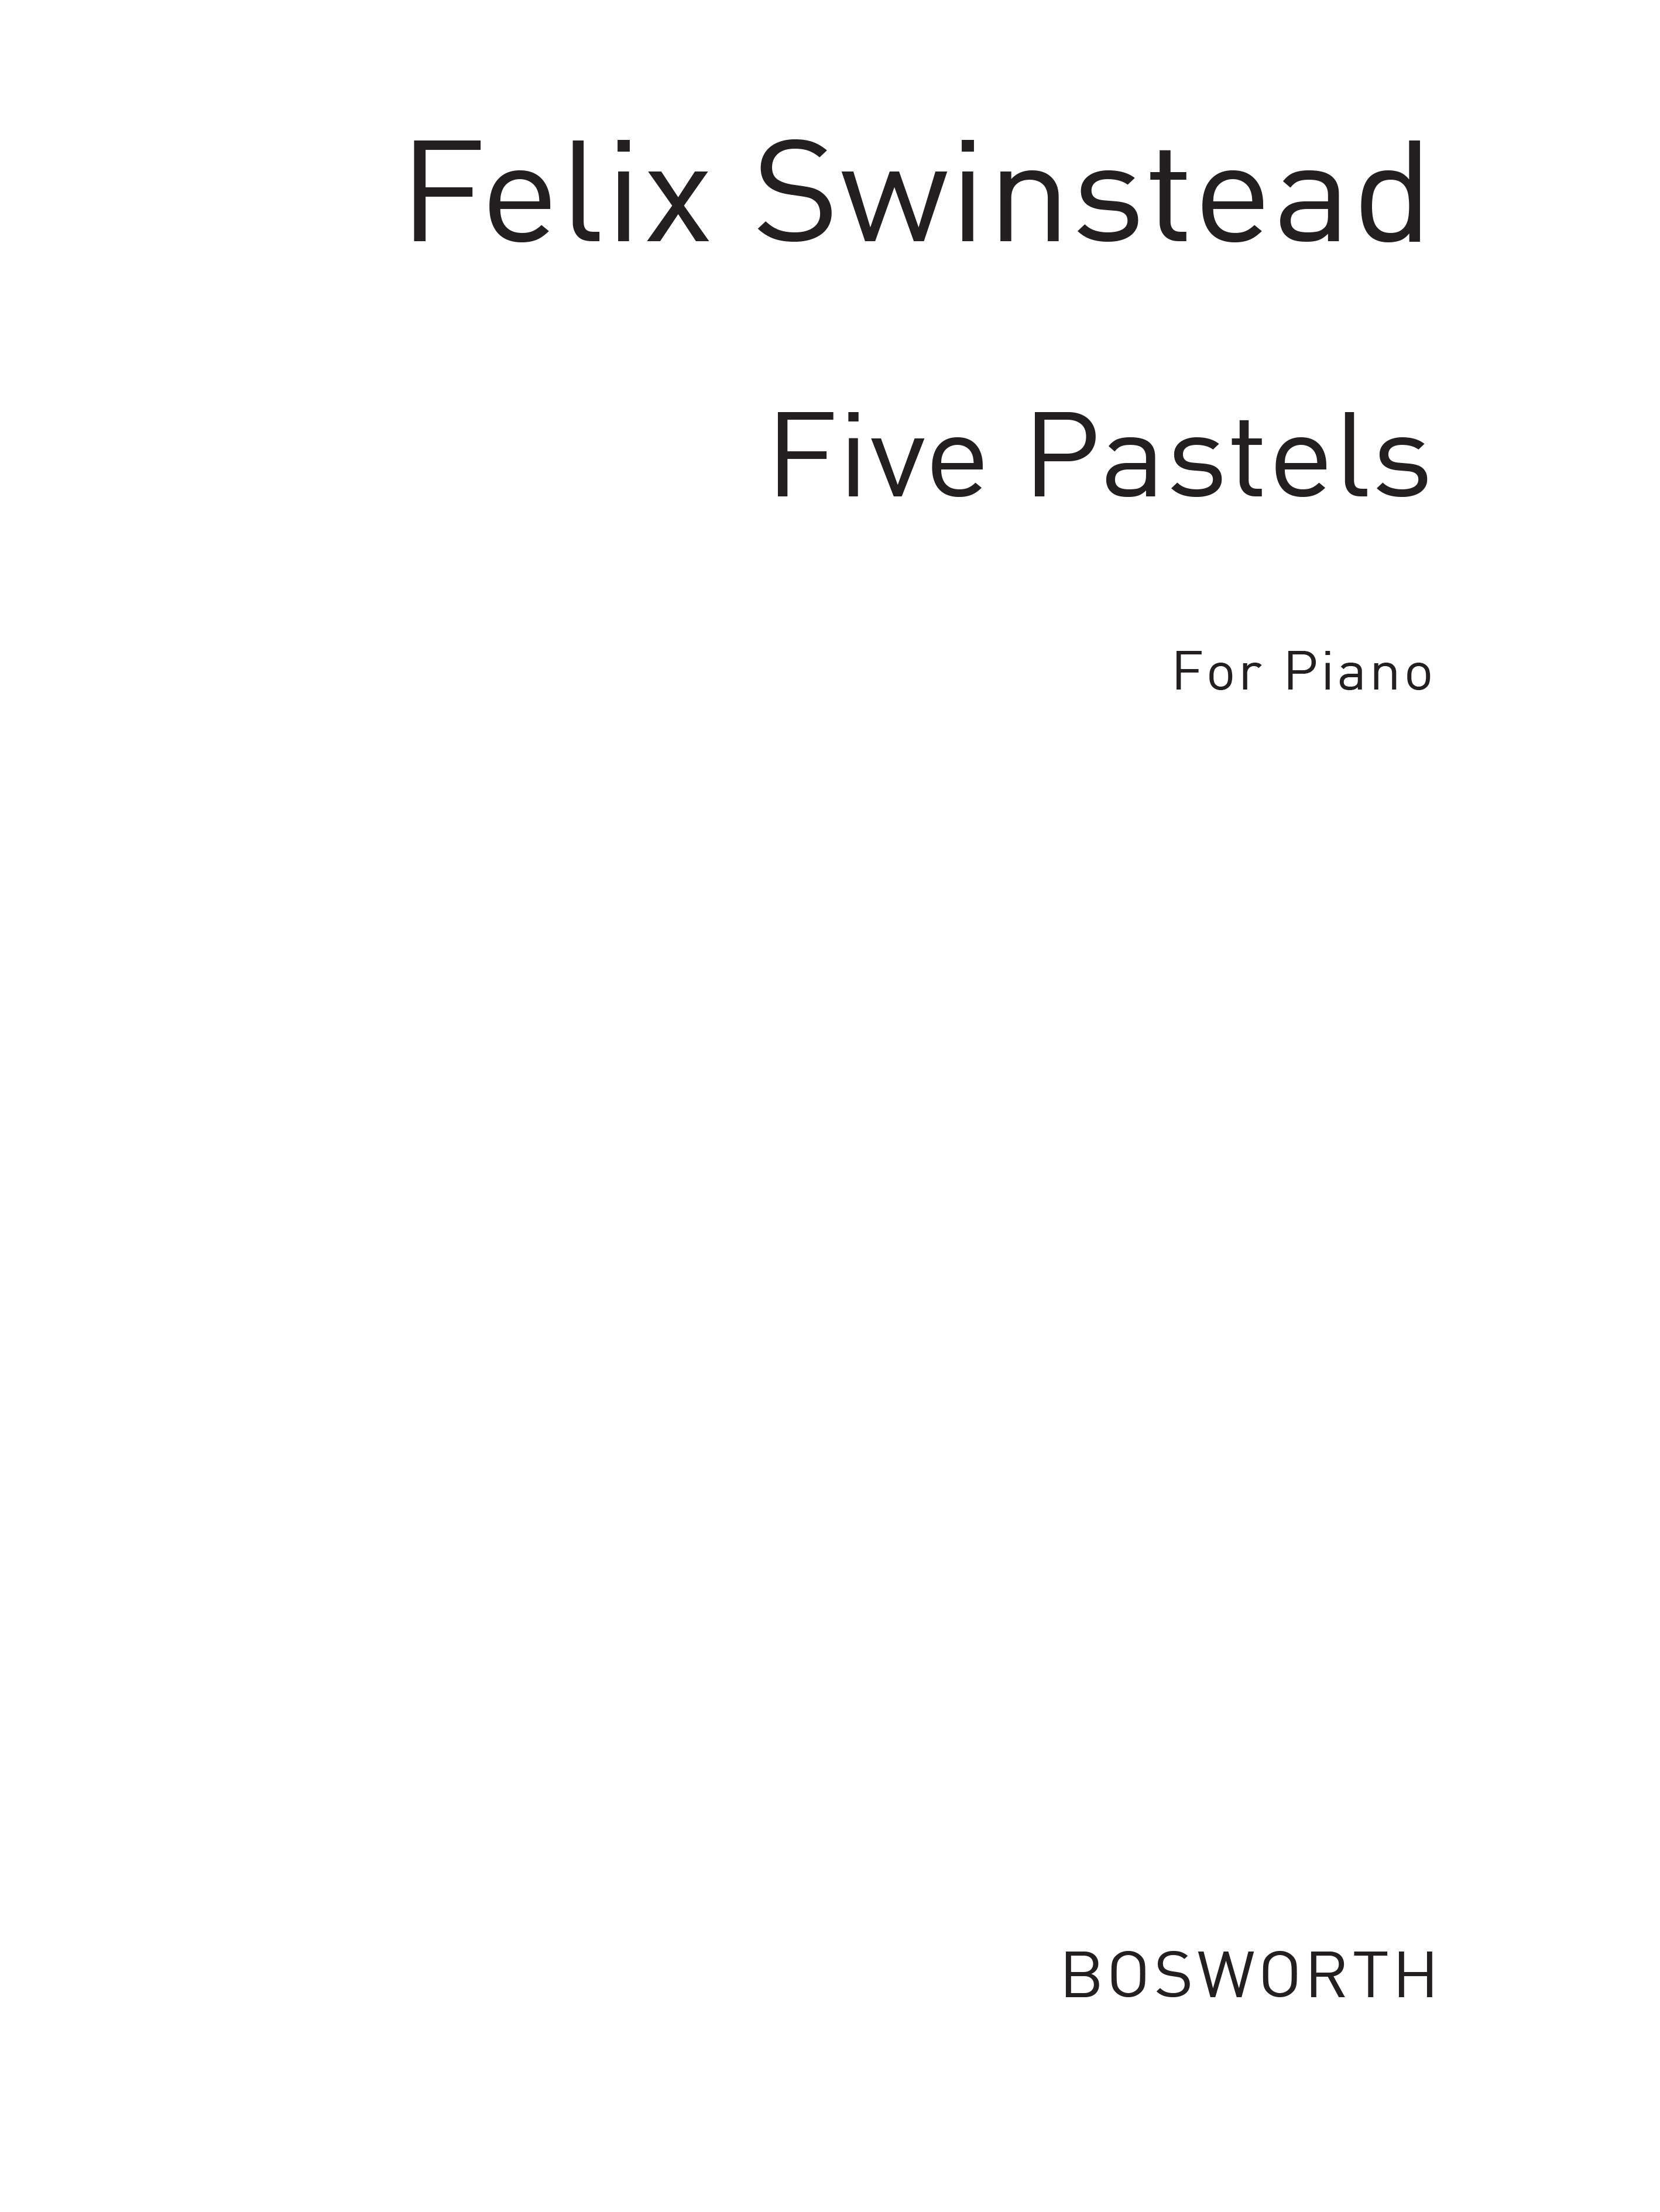 Swinstead, F: Five Pastels: Pf